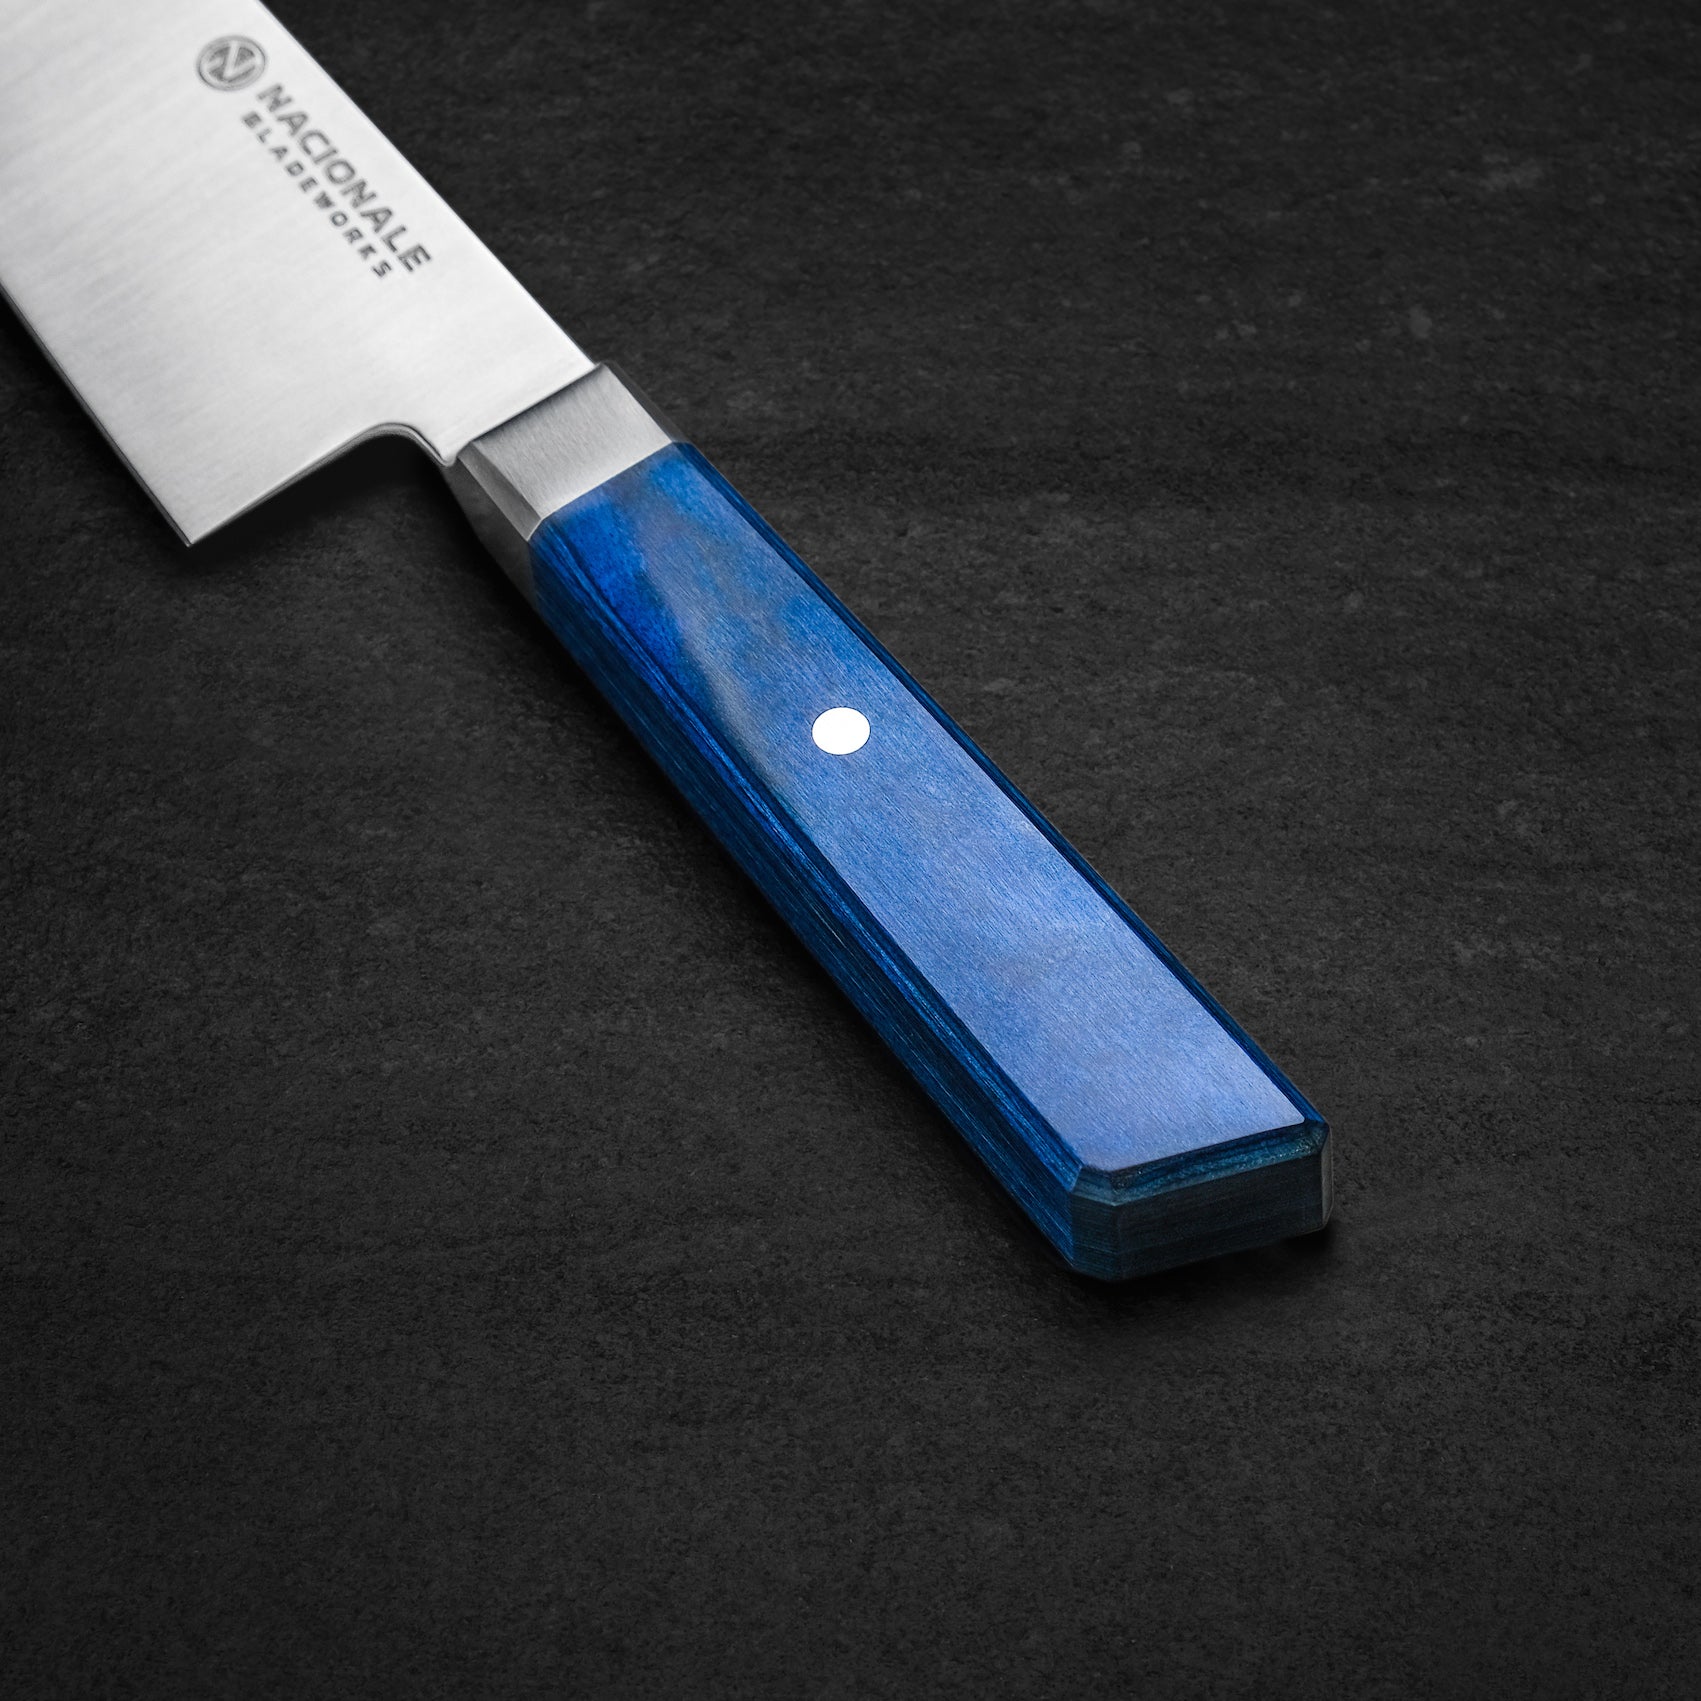 215mm Chef's Knife. Sandvik 14c28n. Blue Pakkawood Handle